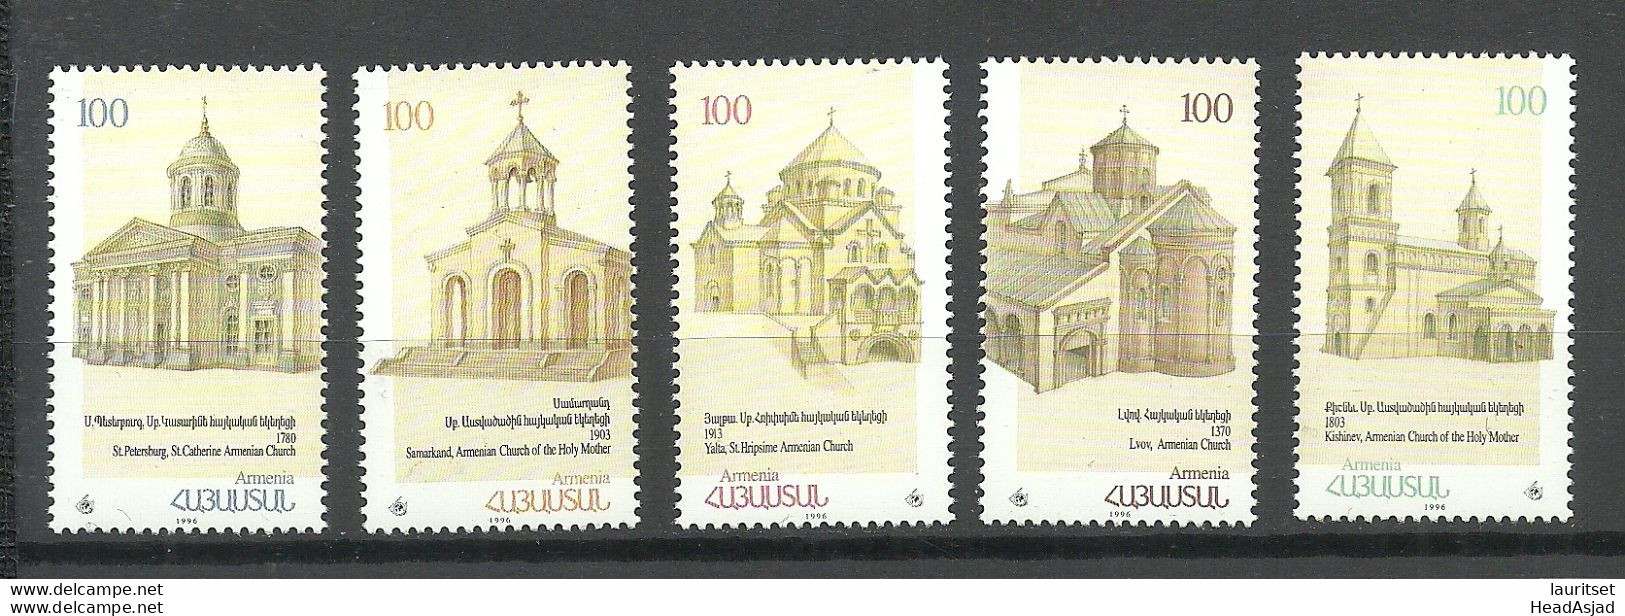 ARMENIEN Armenia 1997 Michel 302 - 306 MNH Kirchen Churches - Churches & Cathedrals